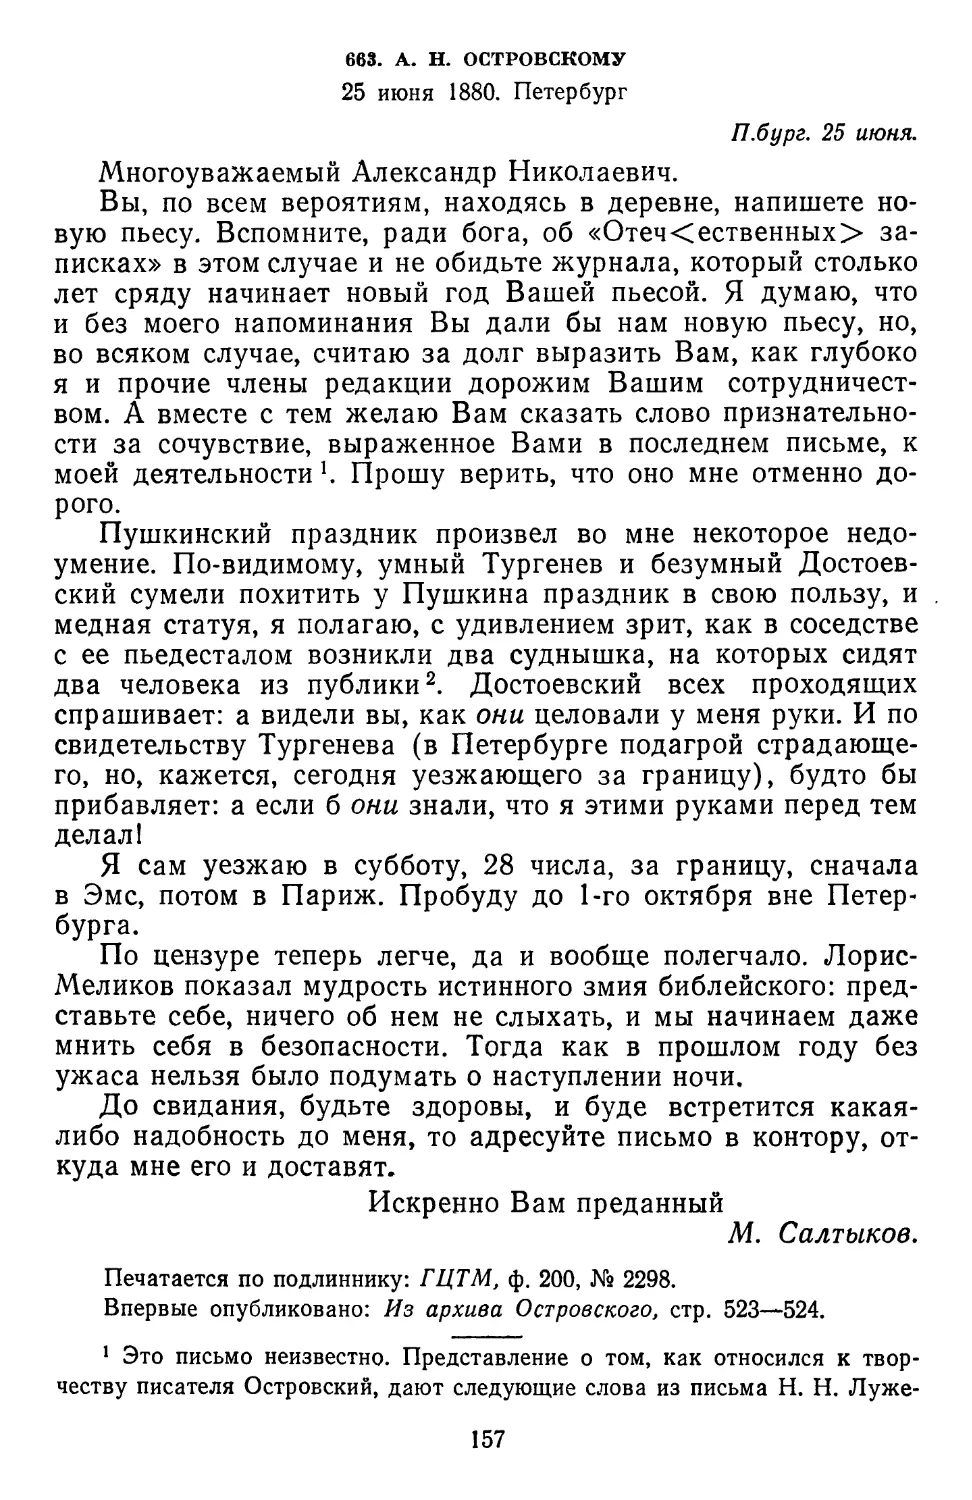 663.А. Н. Островскому. 25 июня 1880. Петербург